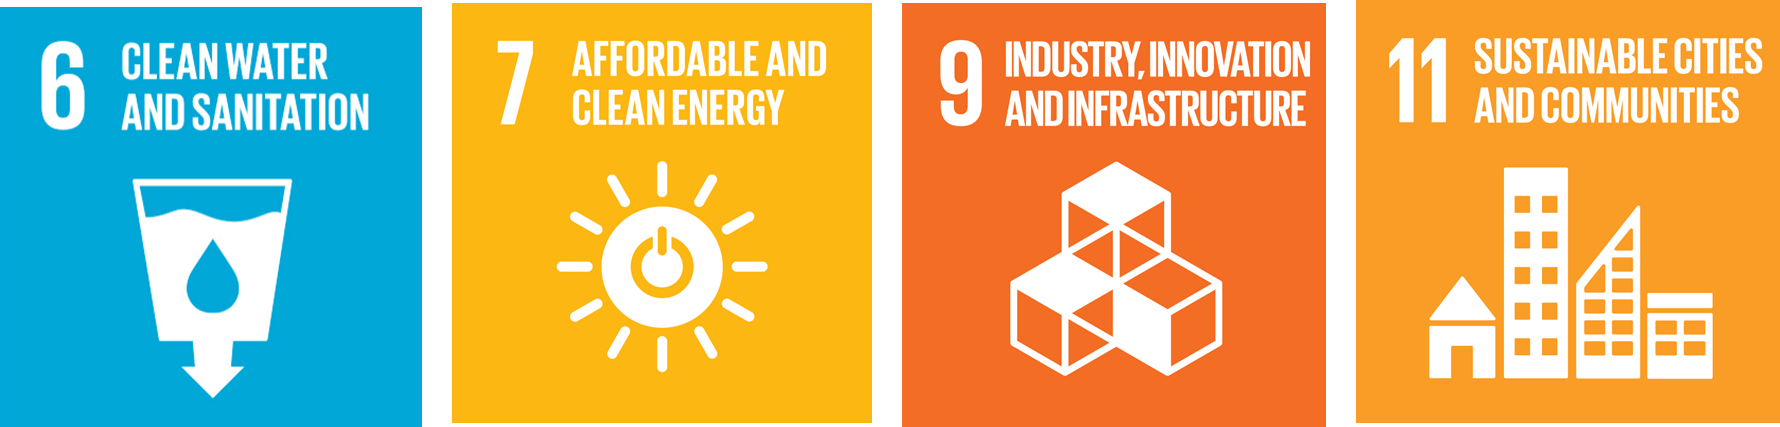 UN Sustainable Development Goal (SDG) icons for SDG6, SDG7, SDG9, and SDG11.